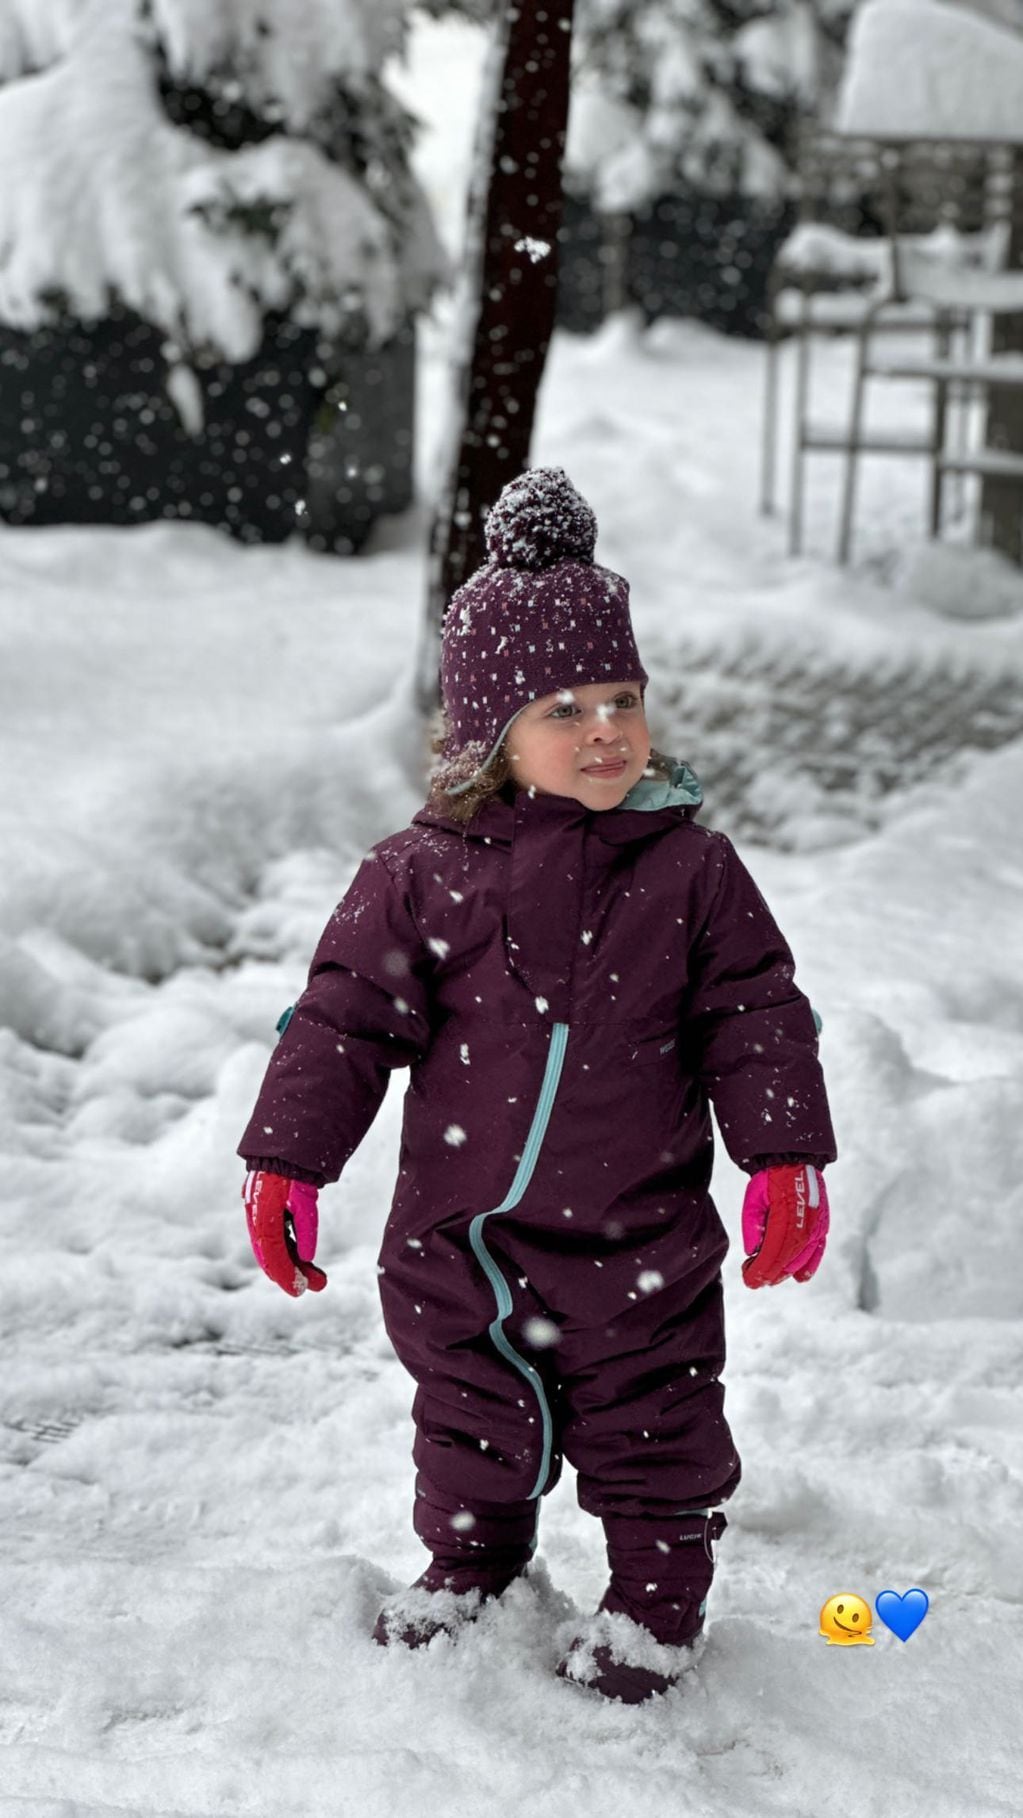 Nina Martínez posando para su mamá Agustina en un precioso conjunto borravino ideal para la nieve.